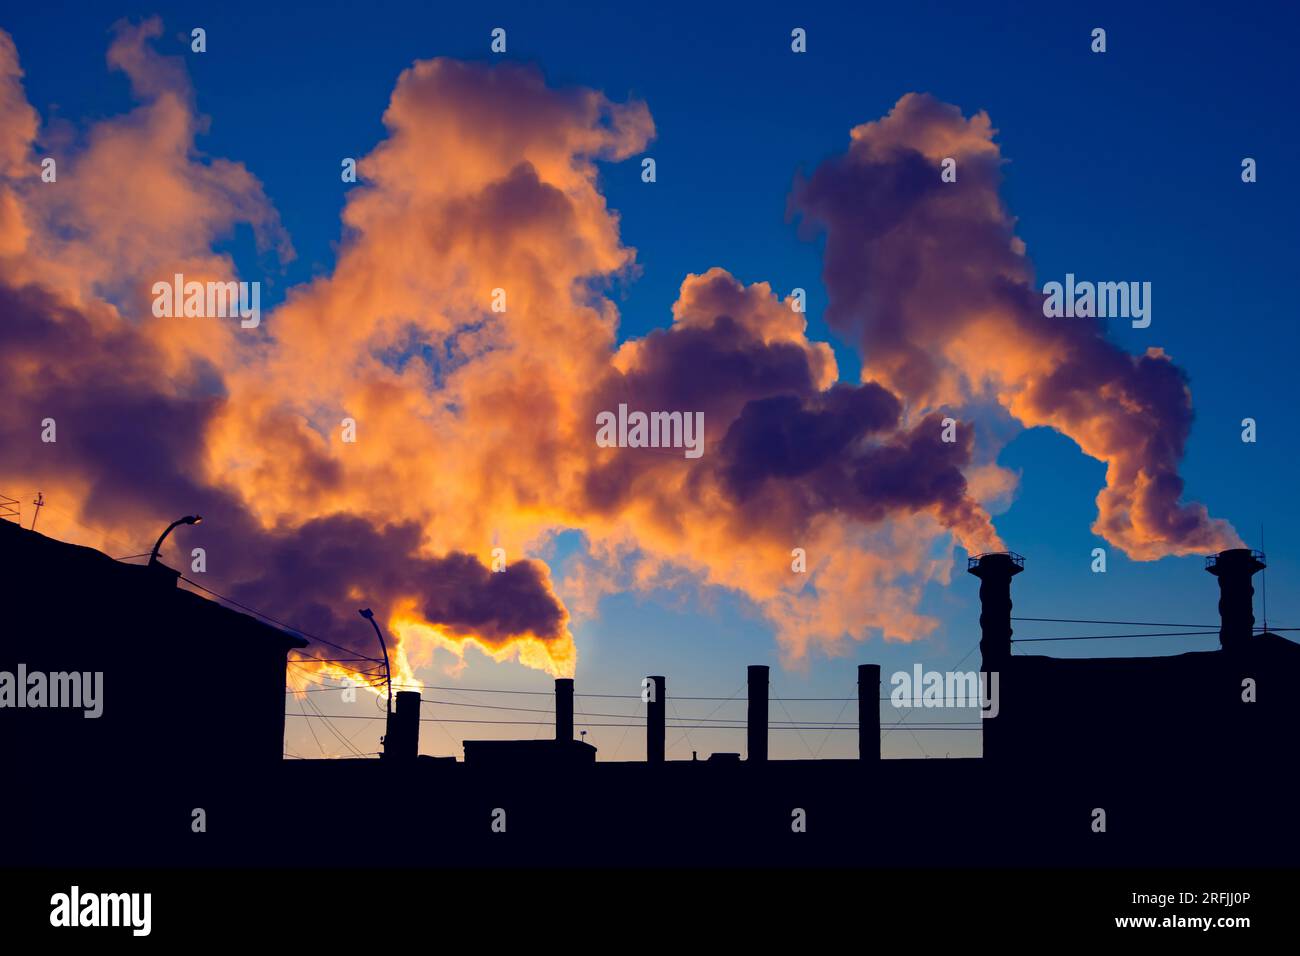 Fabrikschornsteine rauchen giftige Substanzen über der Silhouette von Industriegebäuden über dem wunderschönen blauen Himmel bei Sonnenuntergang oder Sonnenaufgang Stockfoto